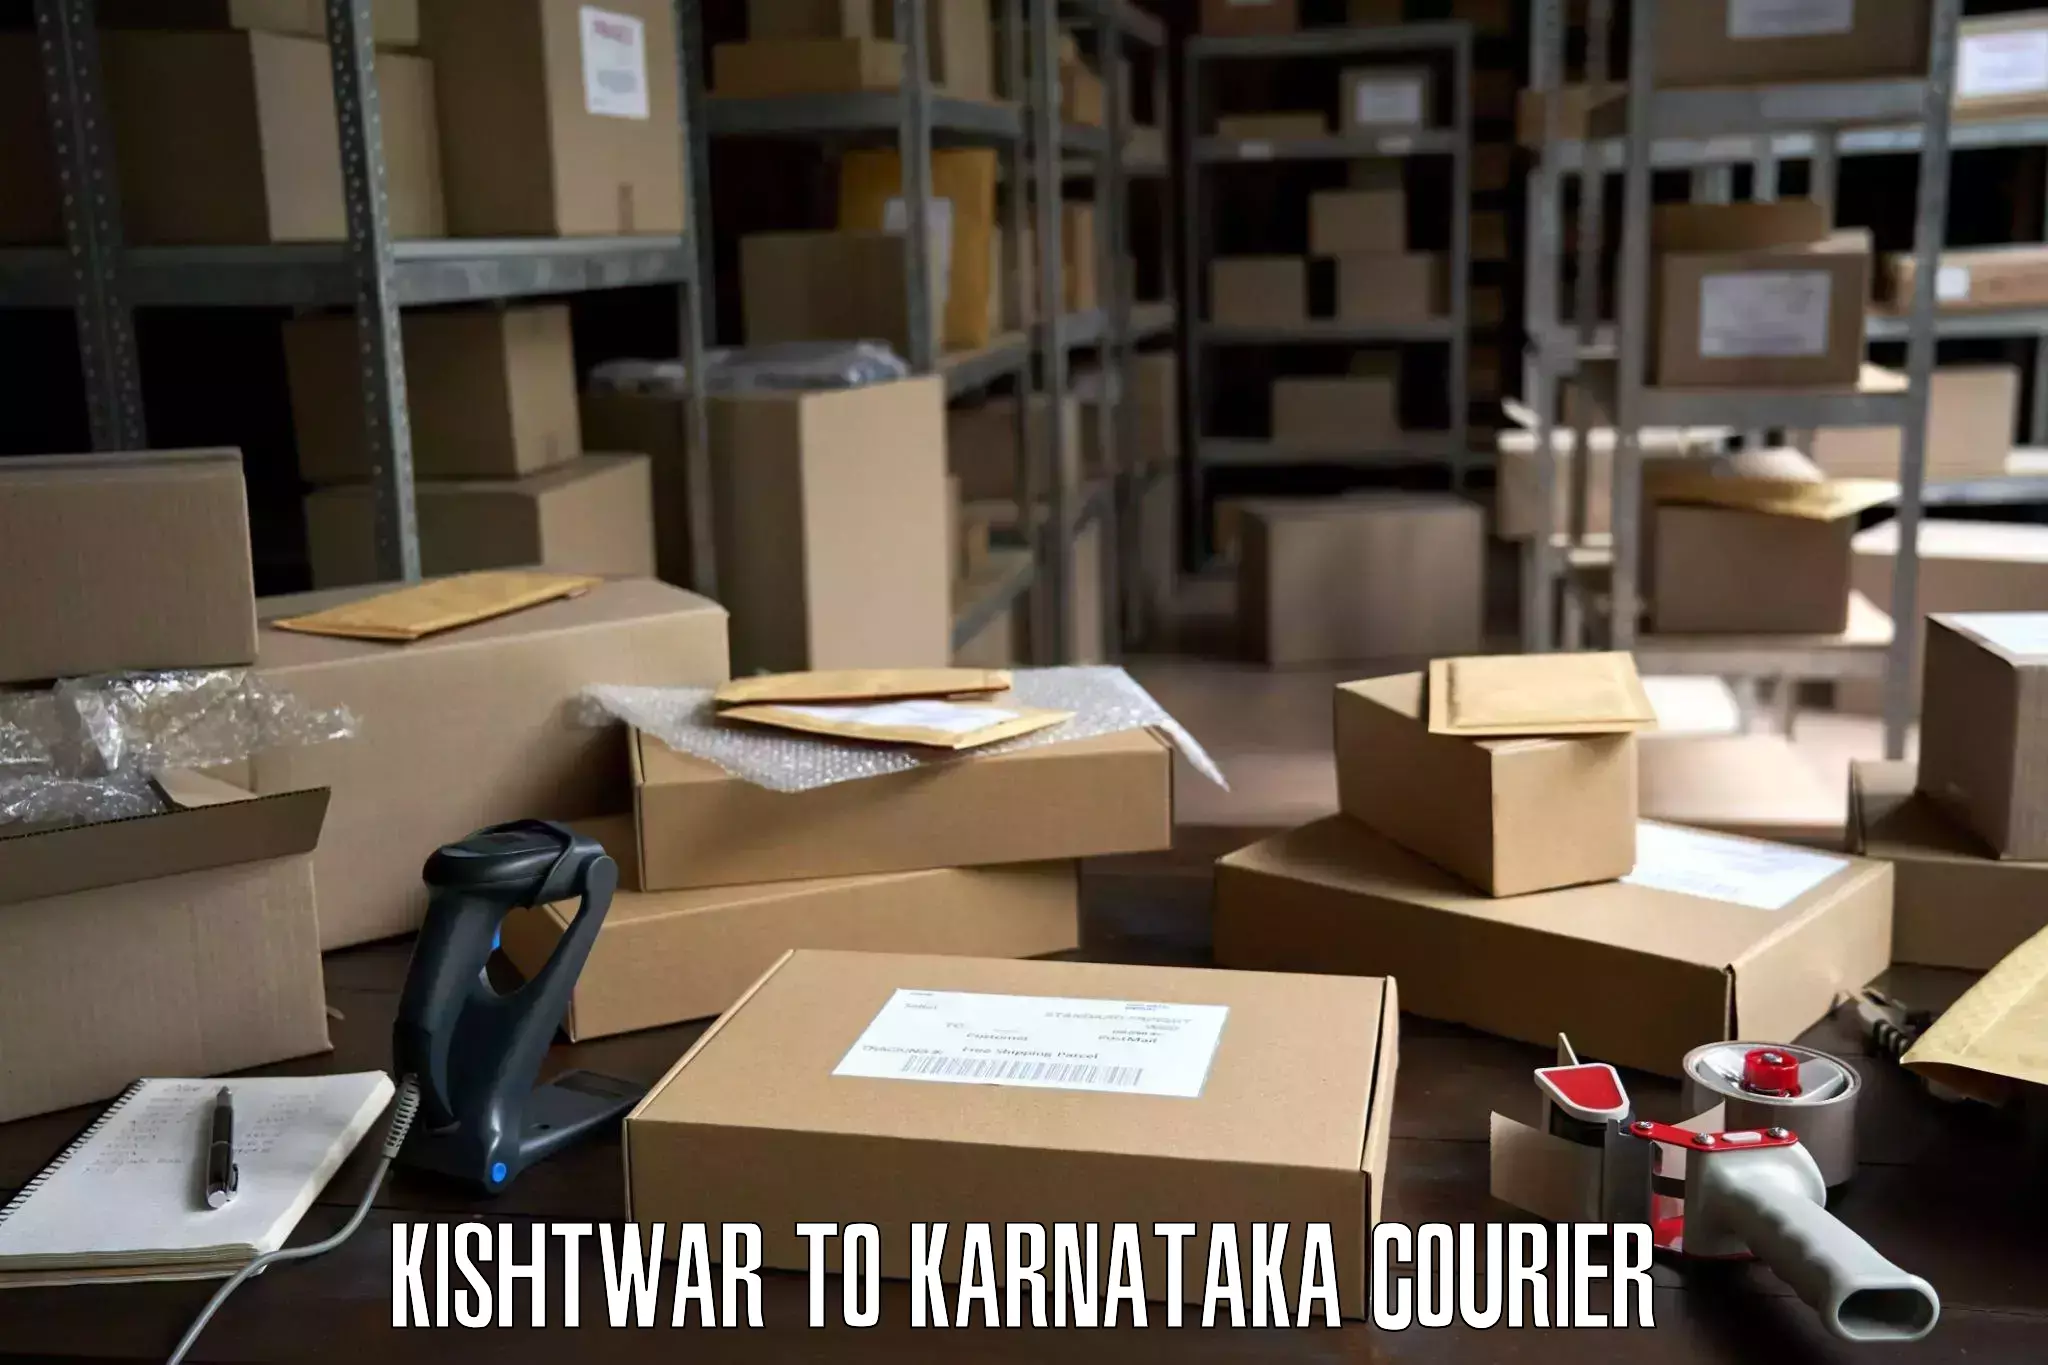 Furniture transport company Kishtwar to Mannaekhelli